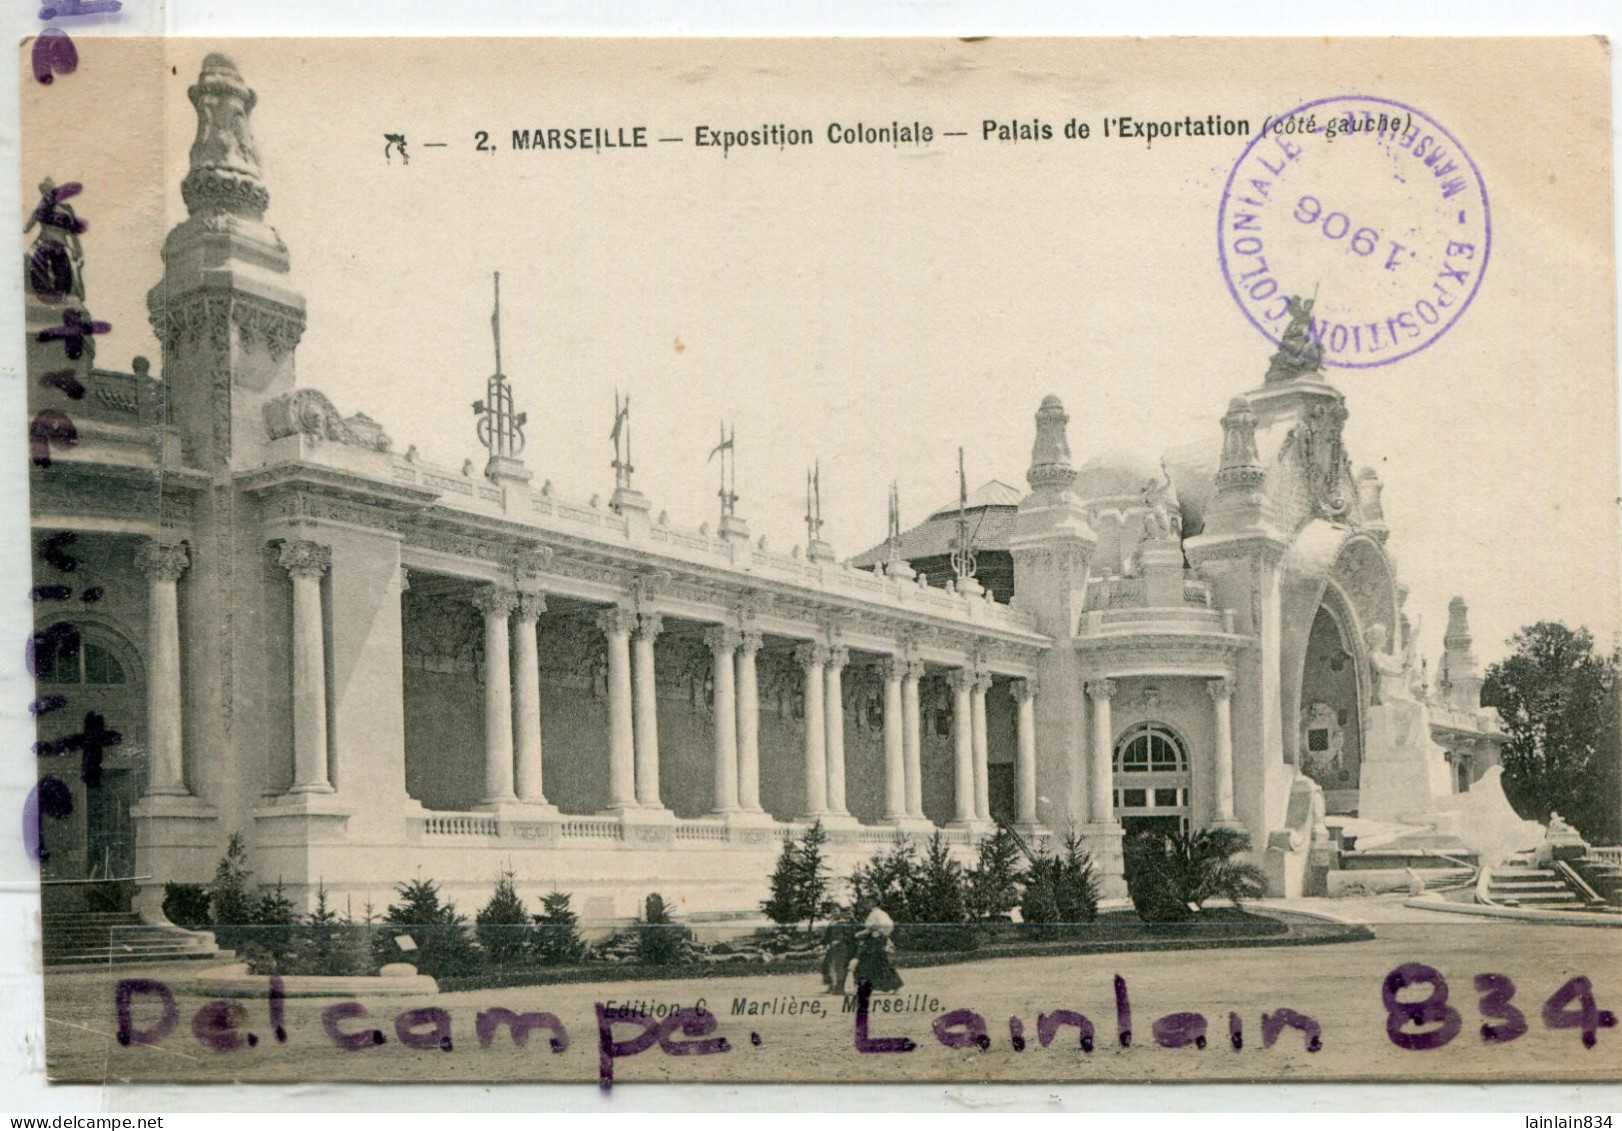 - 2 - MARSEILLE - Exposition Coloniale, 1906, Pavillon Colonial, Palais De L'Exportation, Côté Gauche, TTBE, Scans. - Expositions Coloniales 1906 - 1922